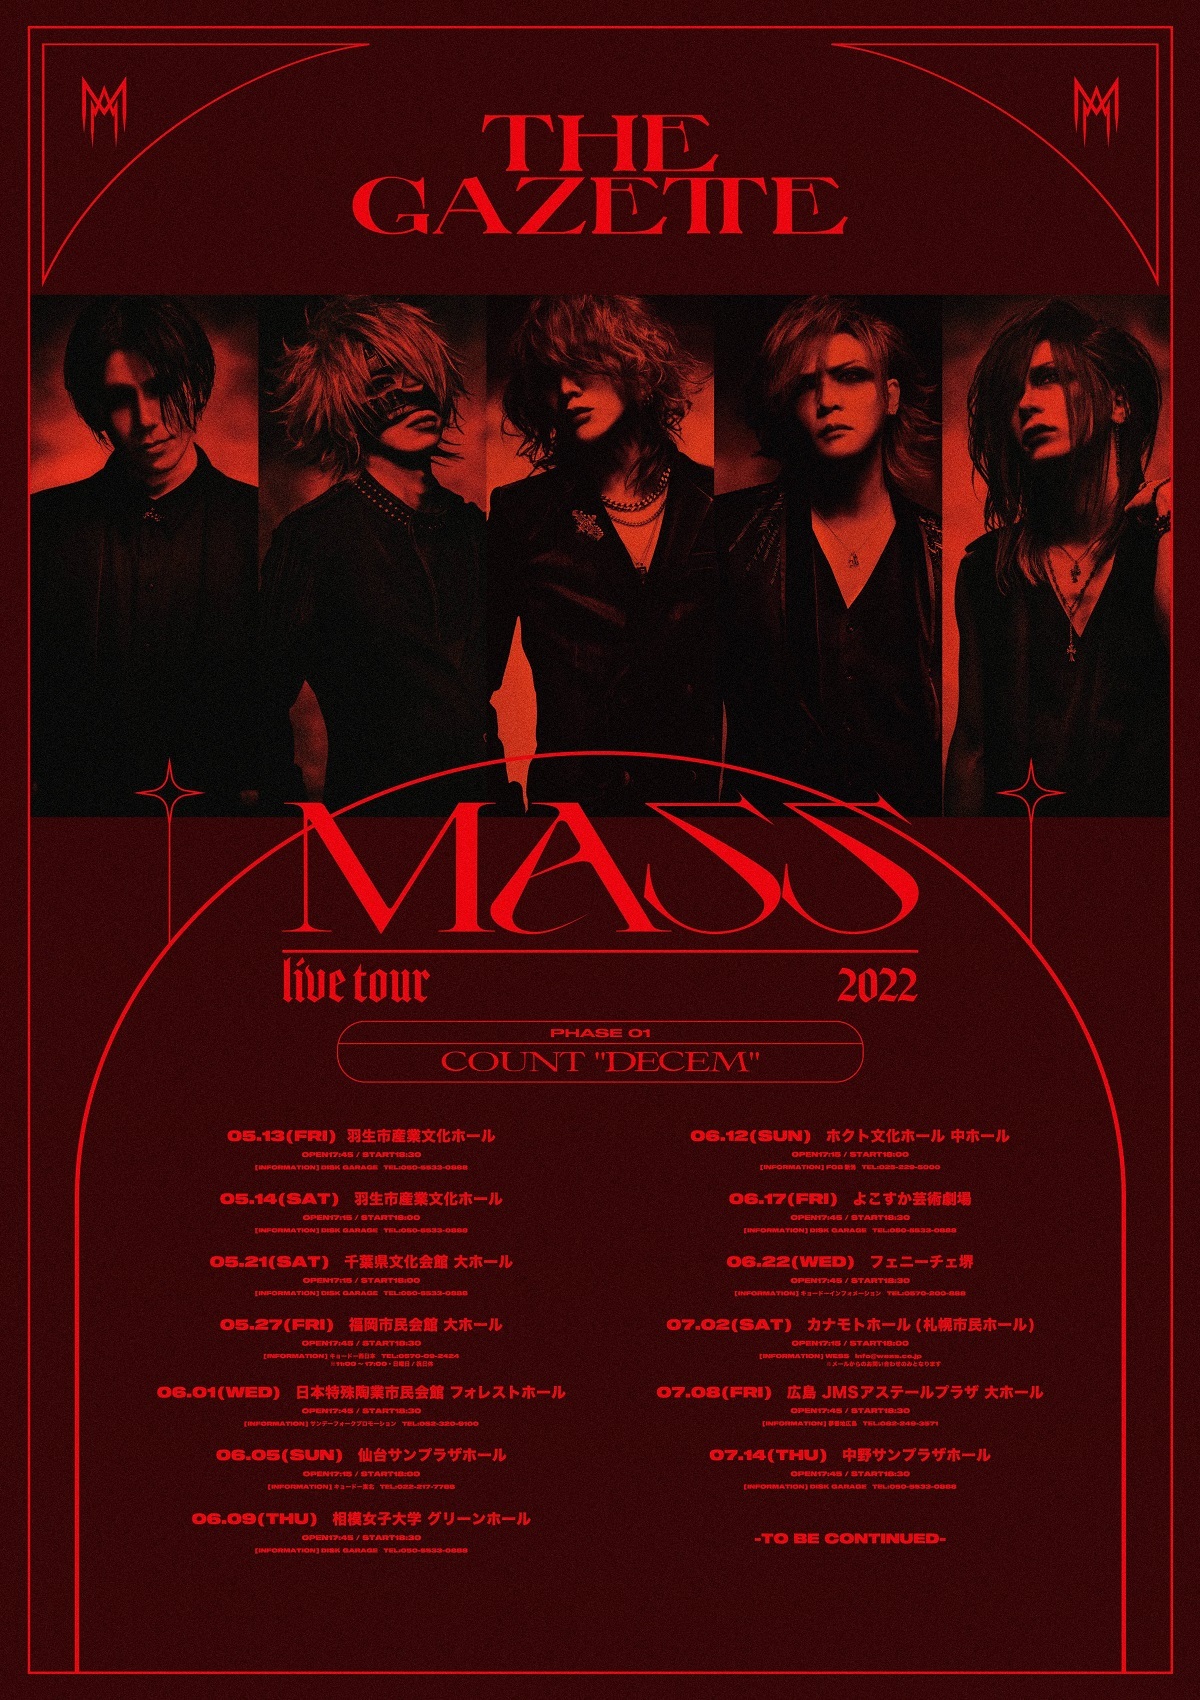 the GazettE、アルバム『MASS』の全貌が明らかとなる全国ツアーを発表 